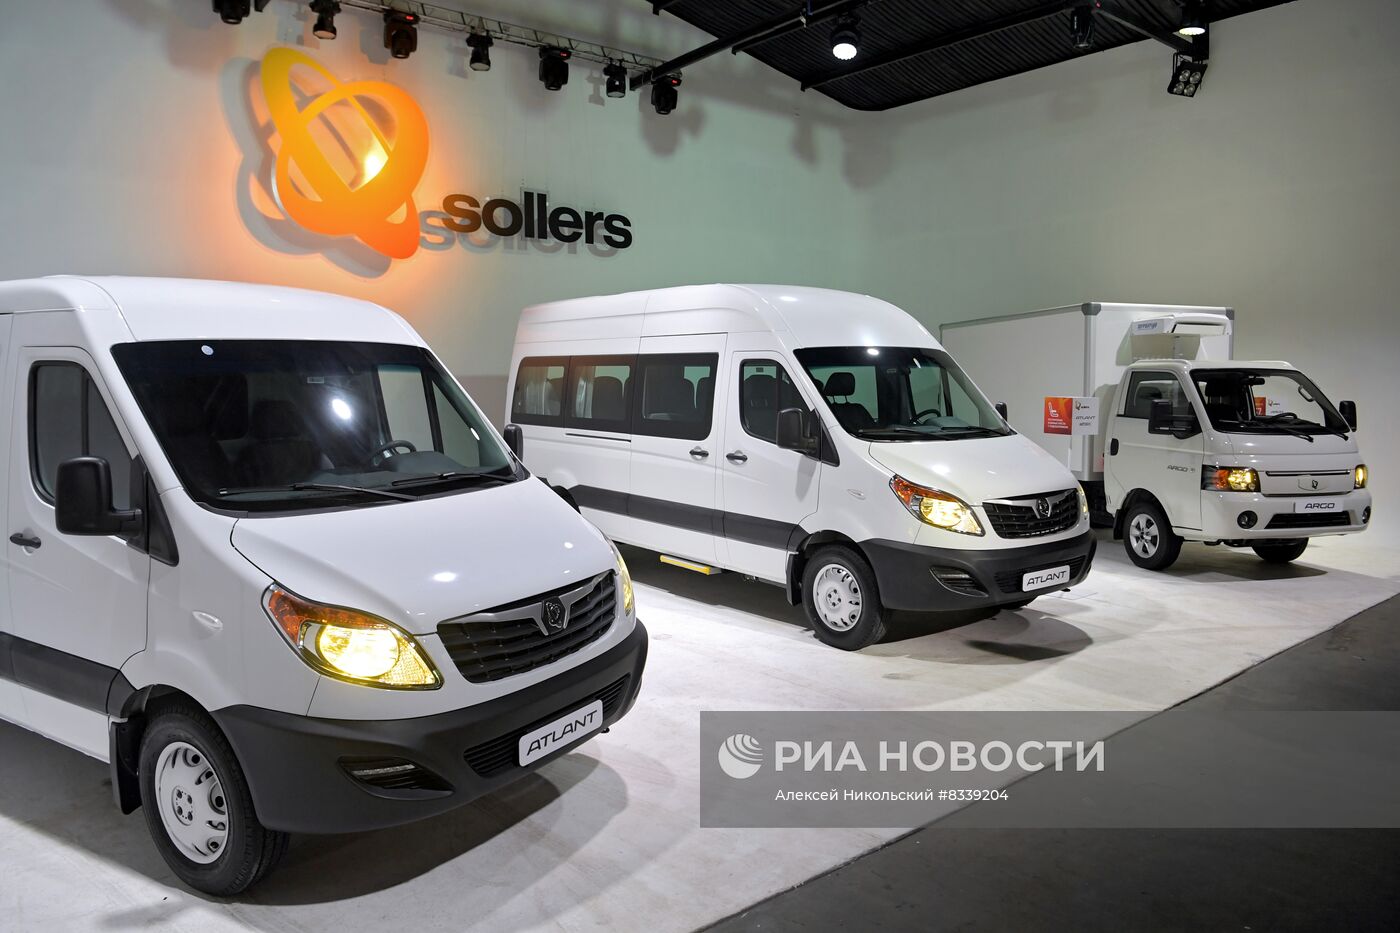 Презентация автомобилей "Соллерс" в Москве 